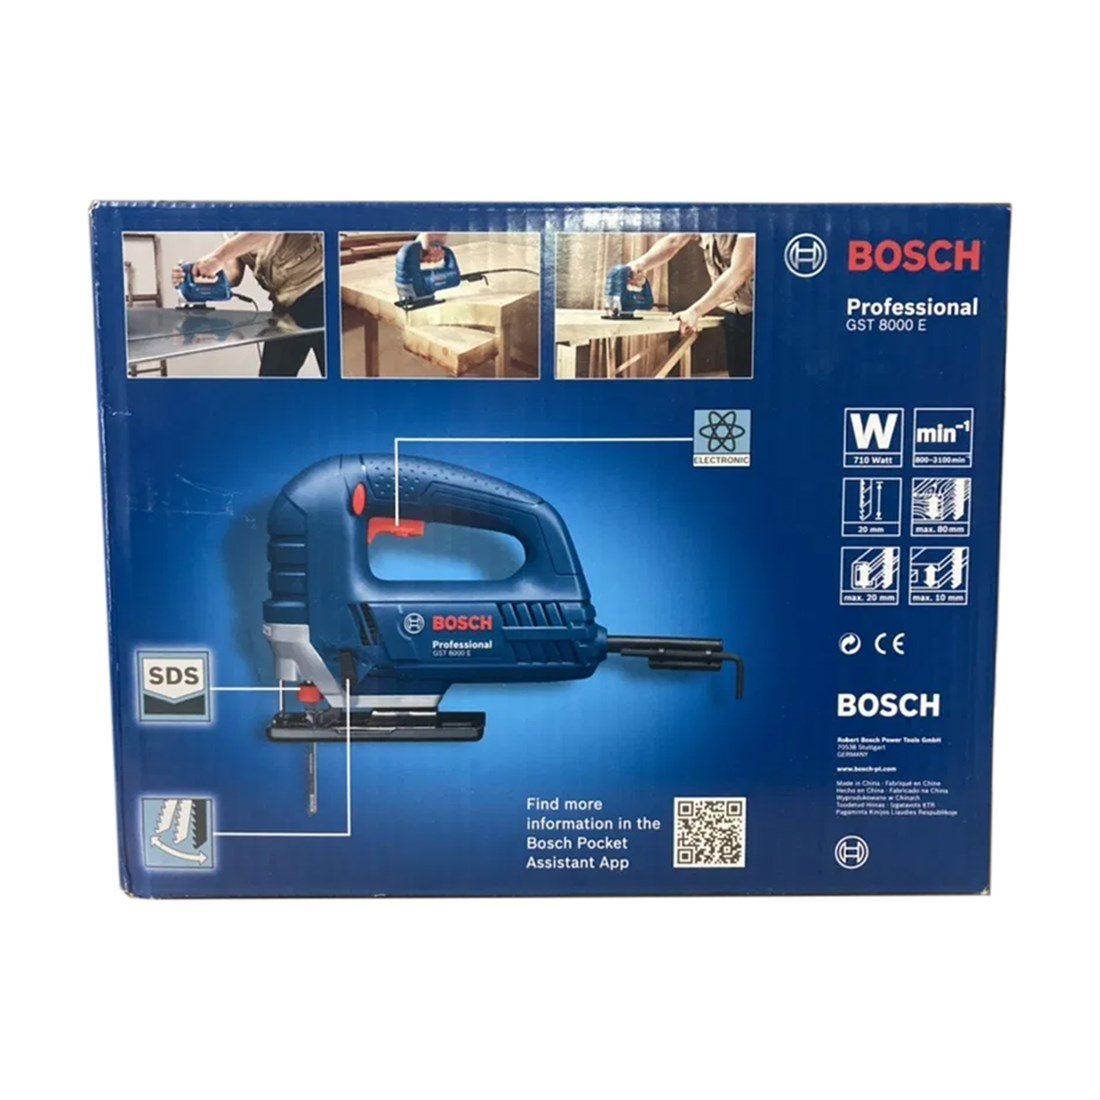 Bosch Gst 8000e Dekupaj Testere 710w-80mm - 060158h000 - 7Kat